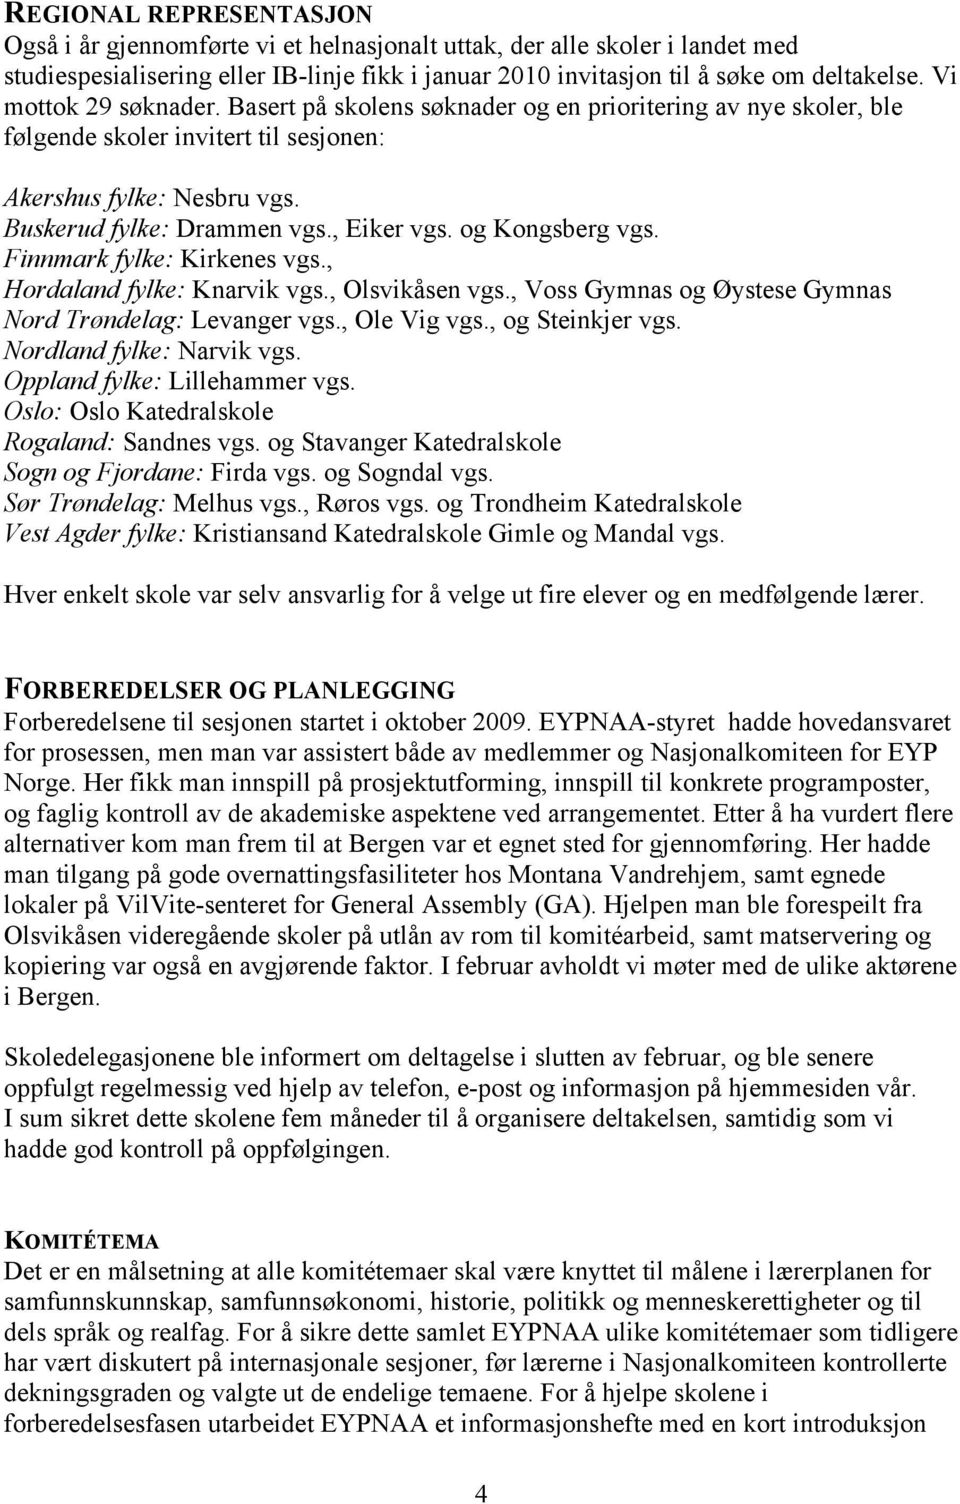 og Kongsberg vgs. Finnmark fylke: Kirkenes vgs., Hordaland fylke: Knarvik vgs., Olsvikåsen vgs., Voss Gymnas og Øystese Gymnas Nord Trøndelag: Levanger vgs., Ole Vig vgs., og Steinkjer vgs.